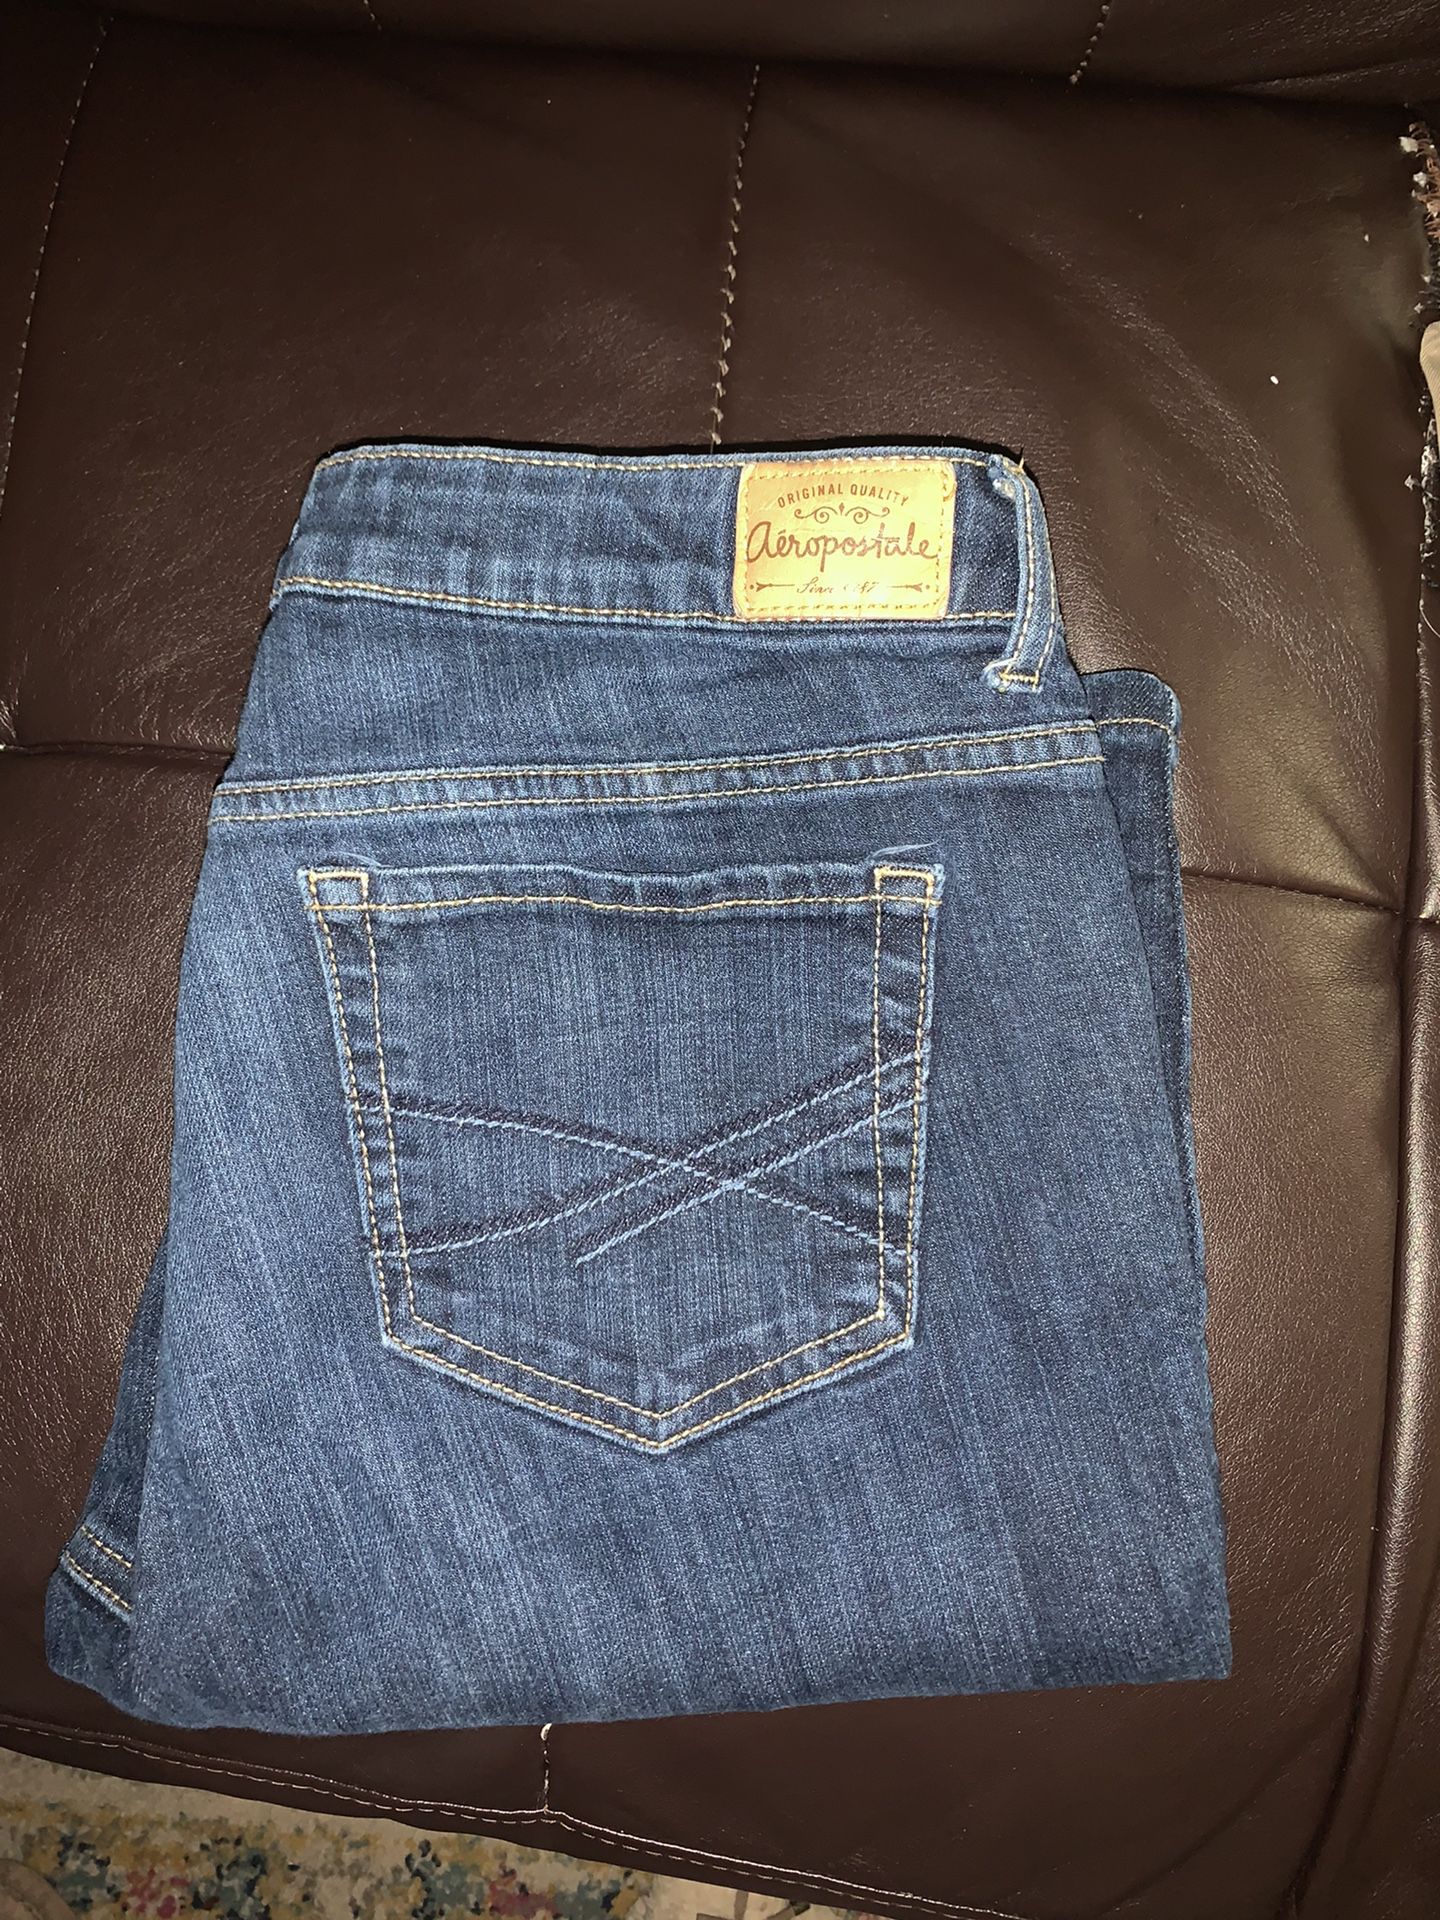 Jeans/Pants 